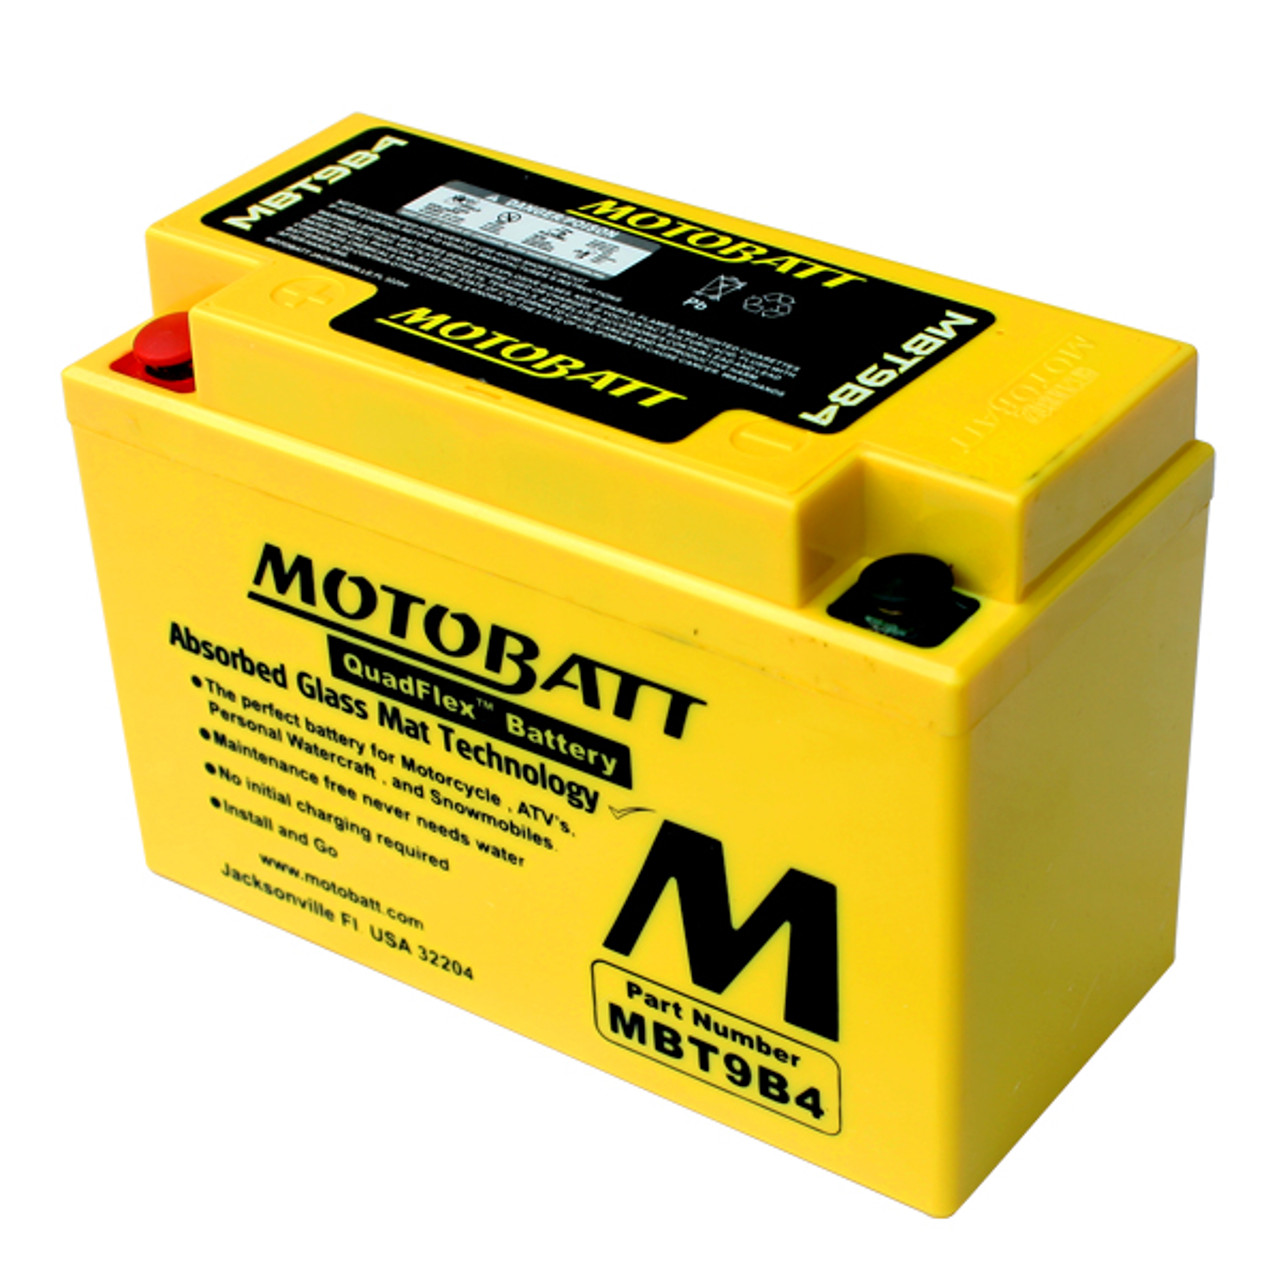 Motobatt MBT9B4 Battery - AGM Sealed for Motorcycle - Powersport